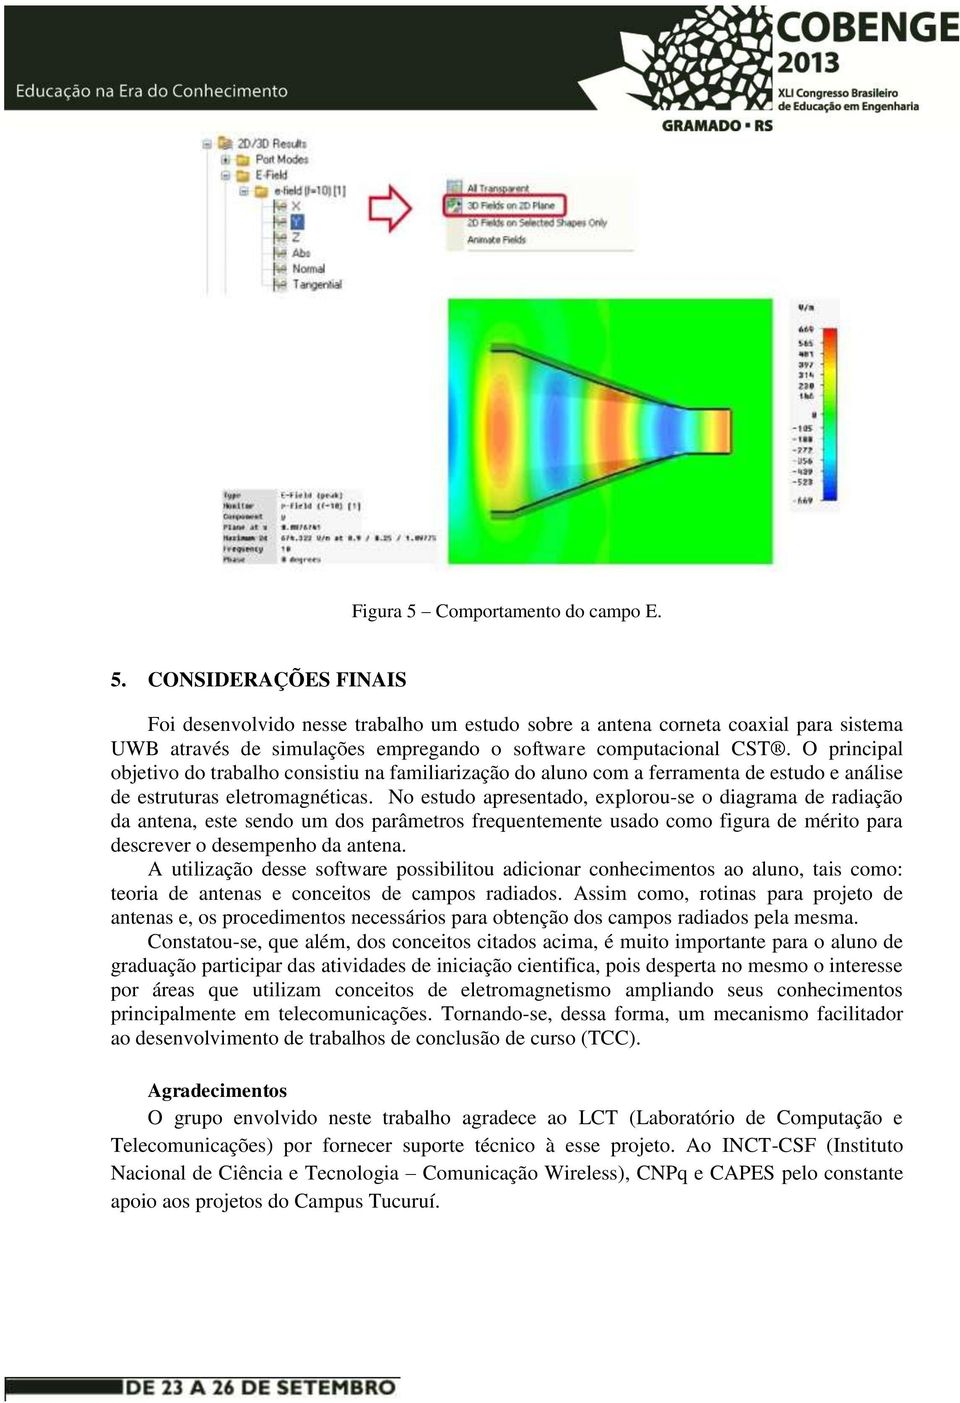 No estudo apresentado, explorou-se o diagrama de radiação da antena, este sendo um dos parâmetros frequentemente usado como figura de mérito para descrever o desempenho da antena.